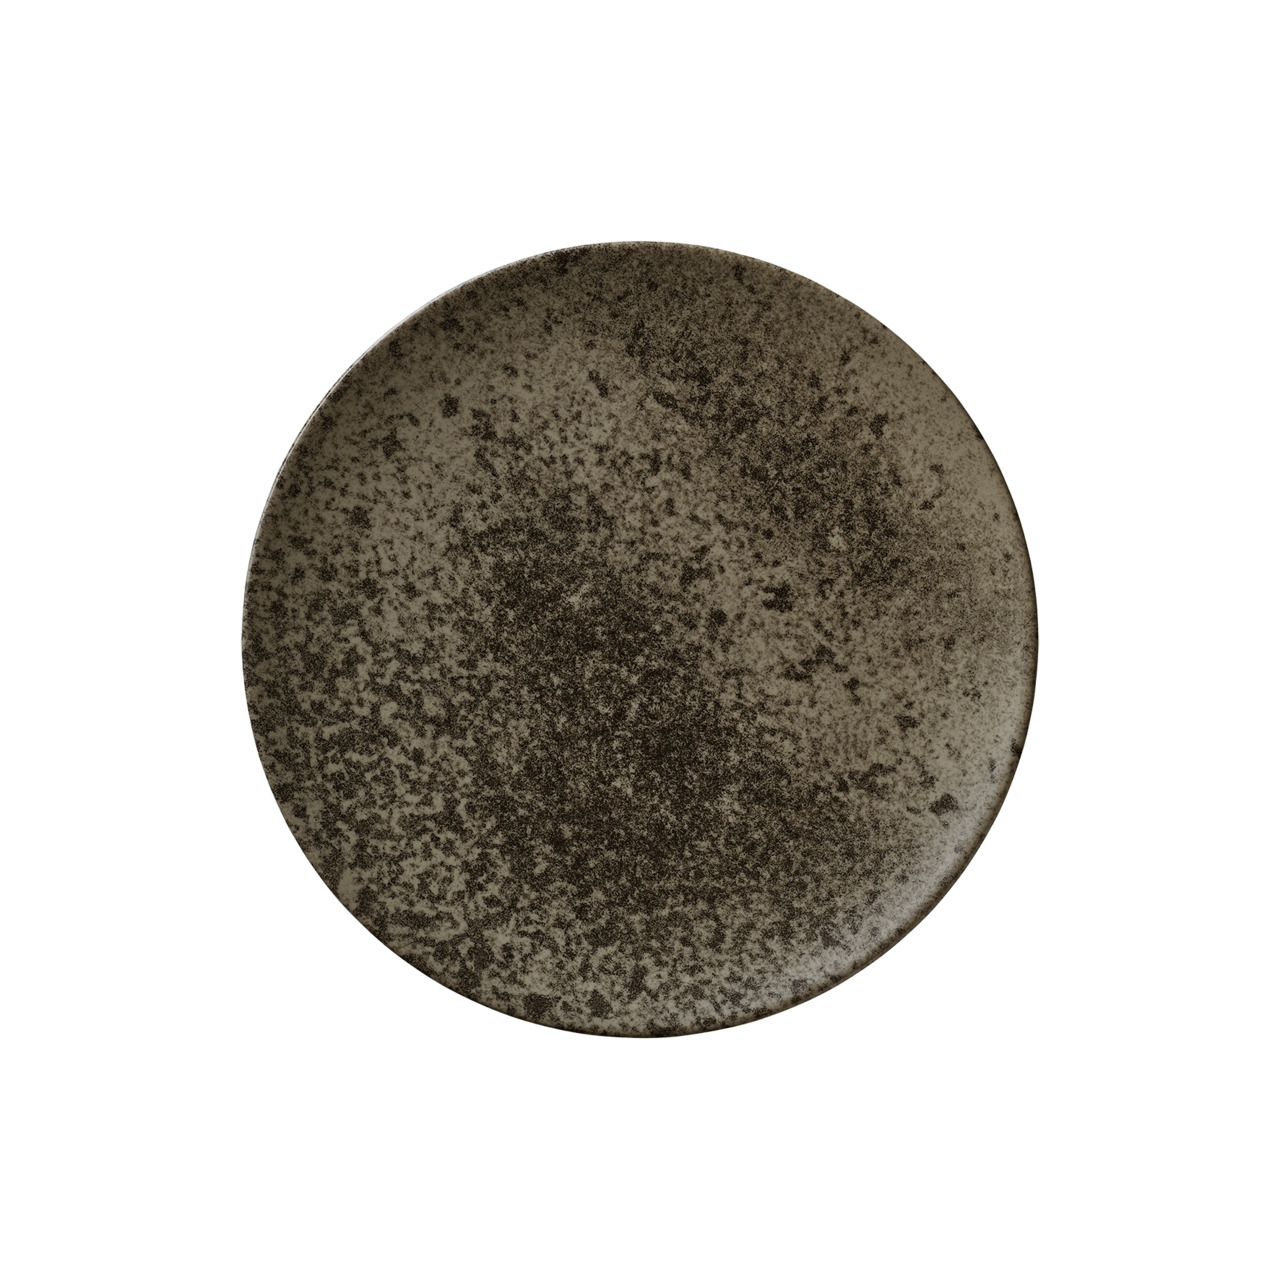 Sandstone, Coupteller flach ø 261 mm dark brown